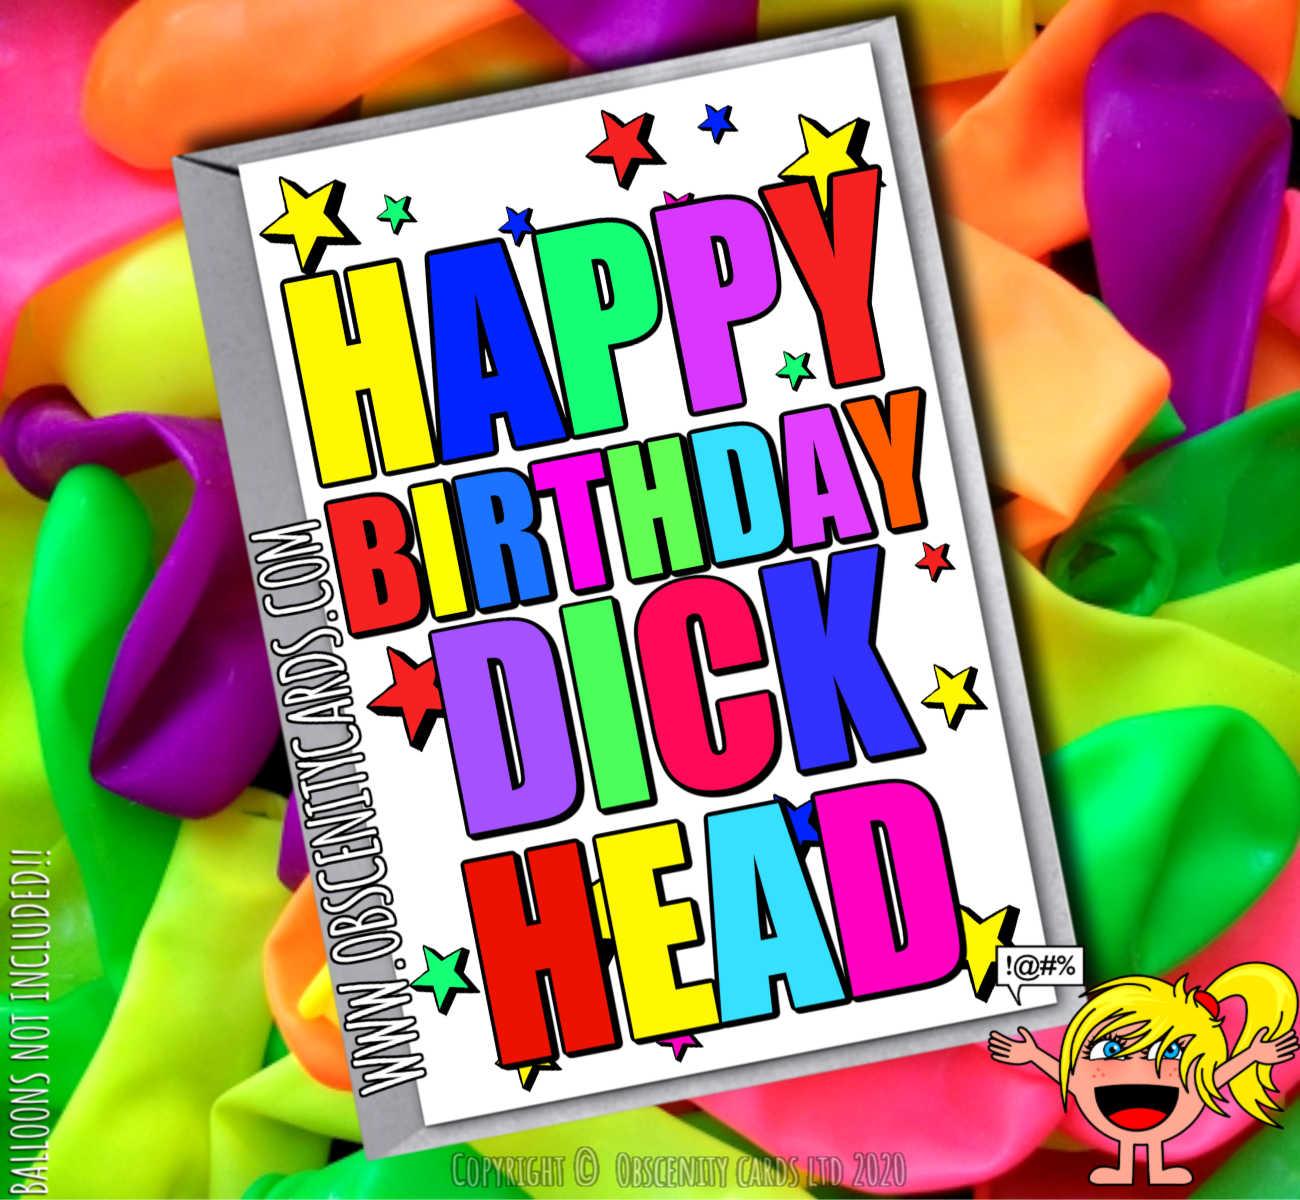 HAPPY BIRTHDAY DICK HEAD FUNNY CARD